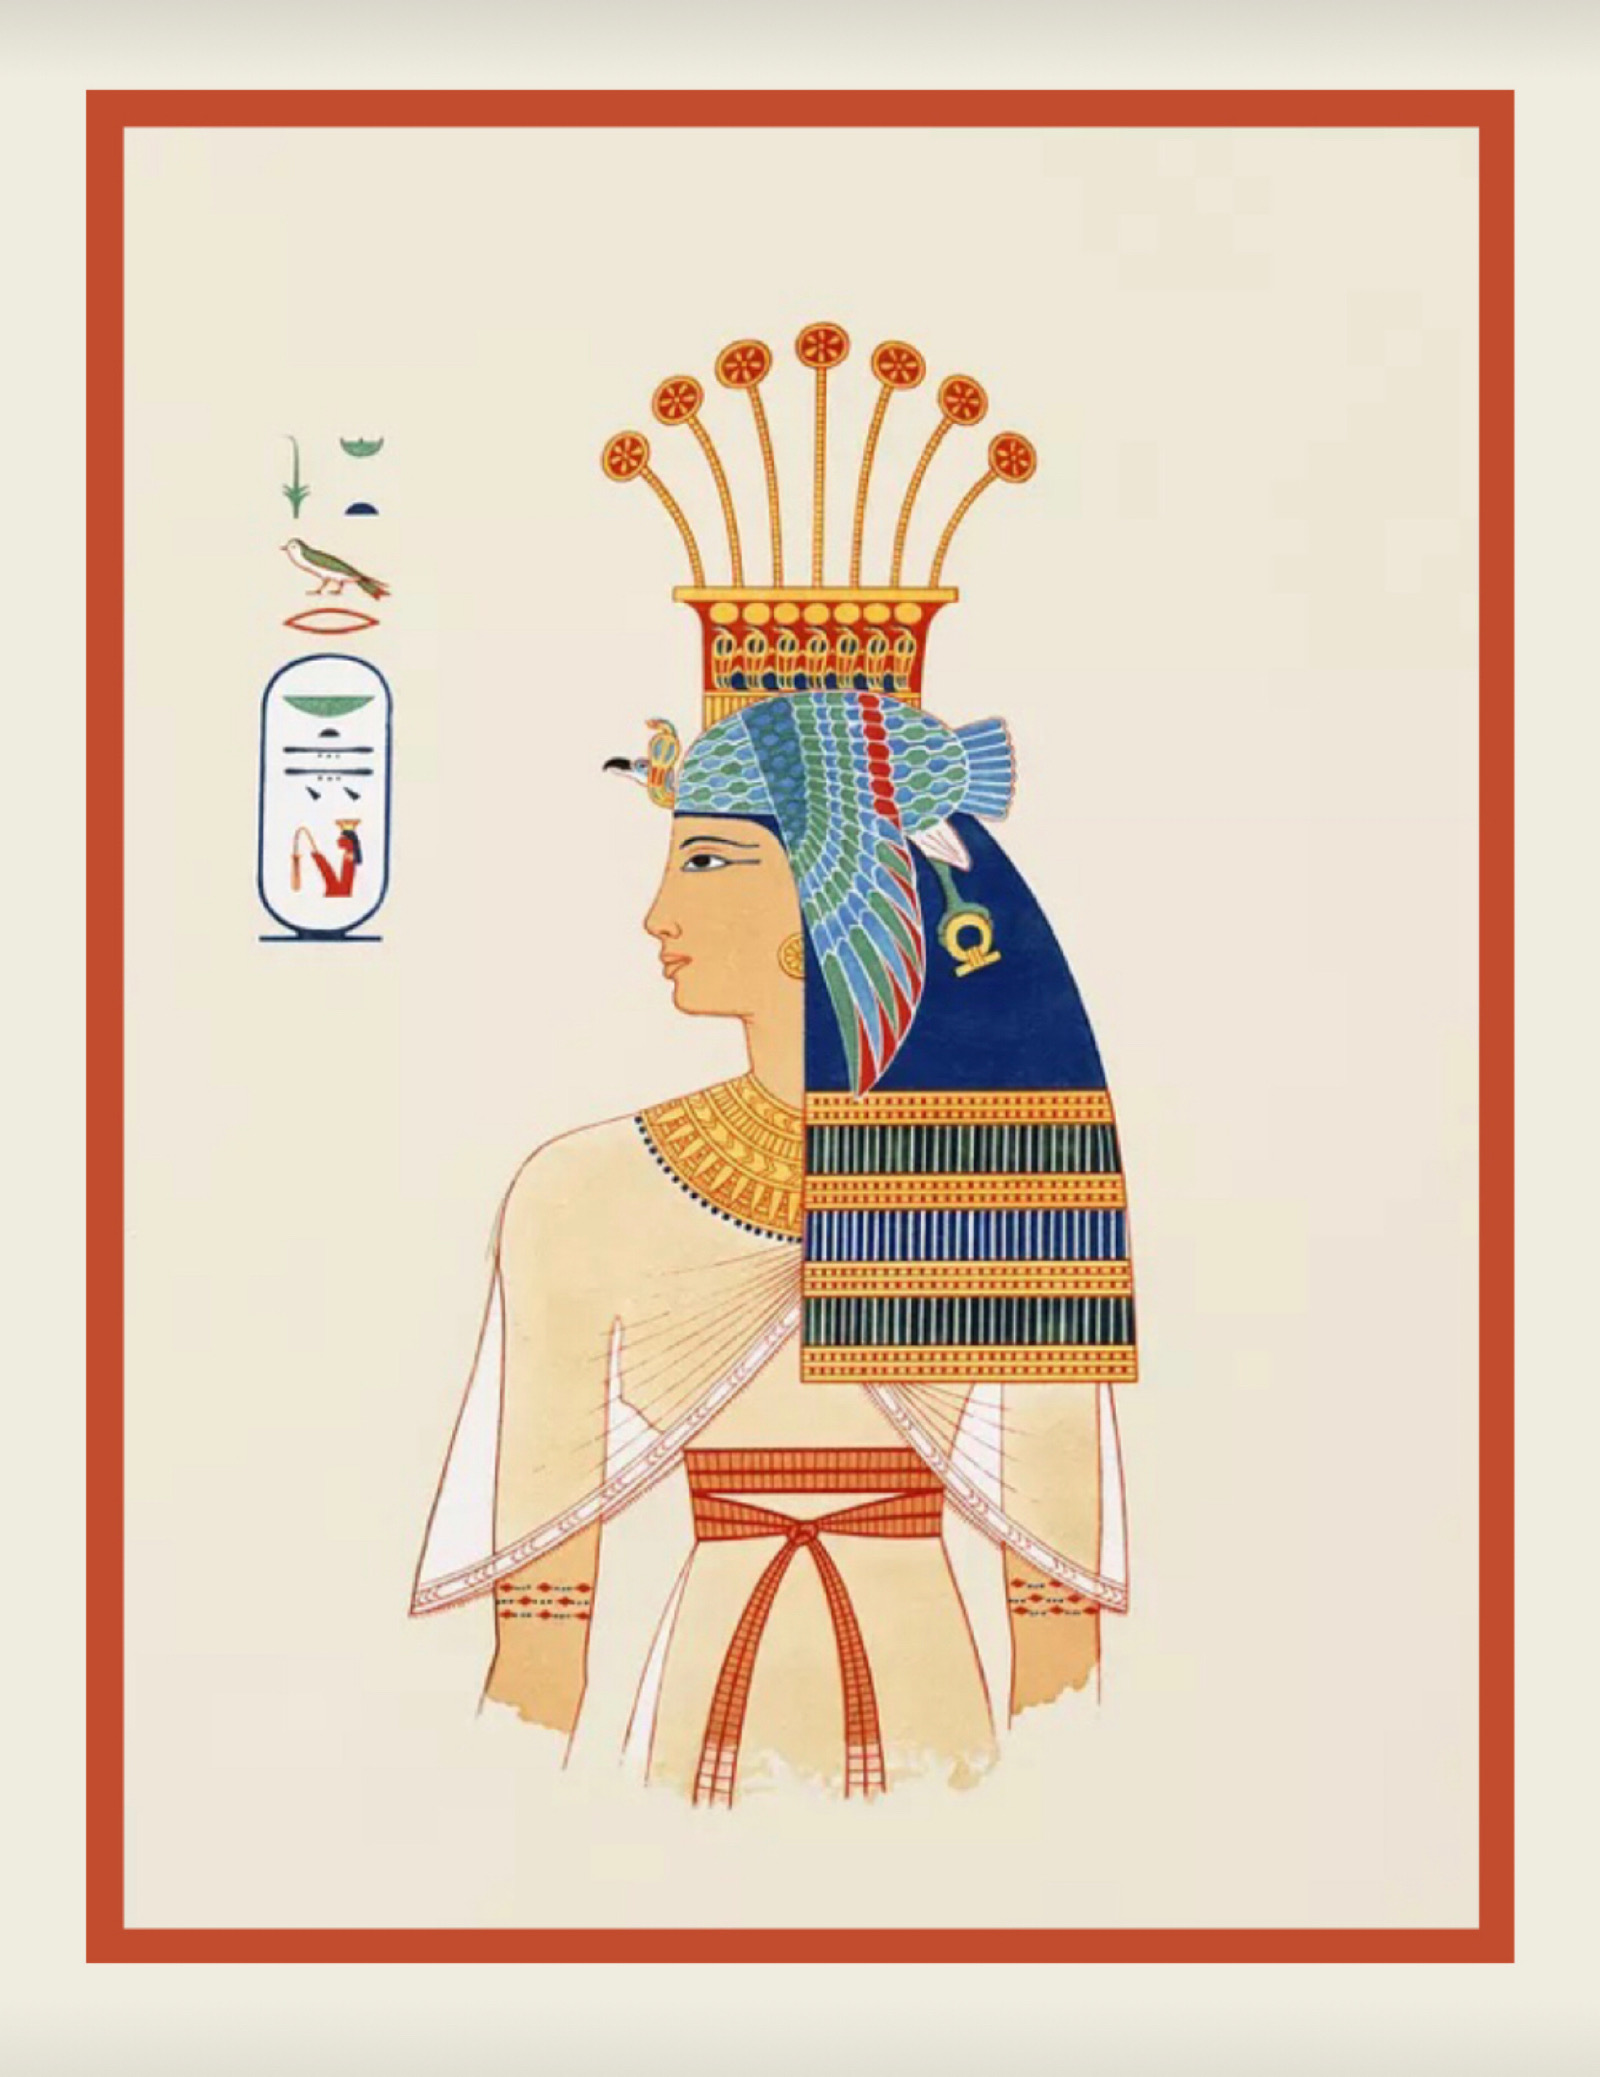 埃及纹样的特点图片